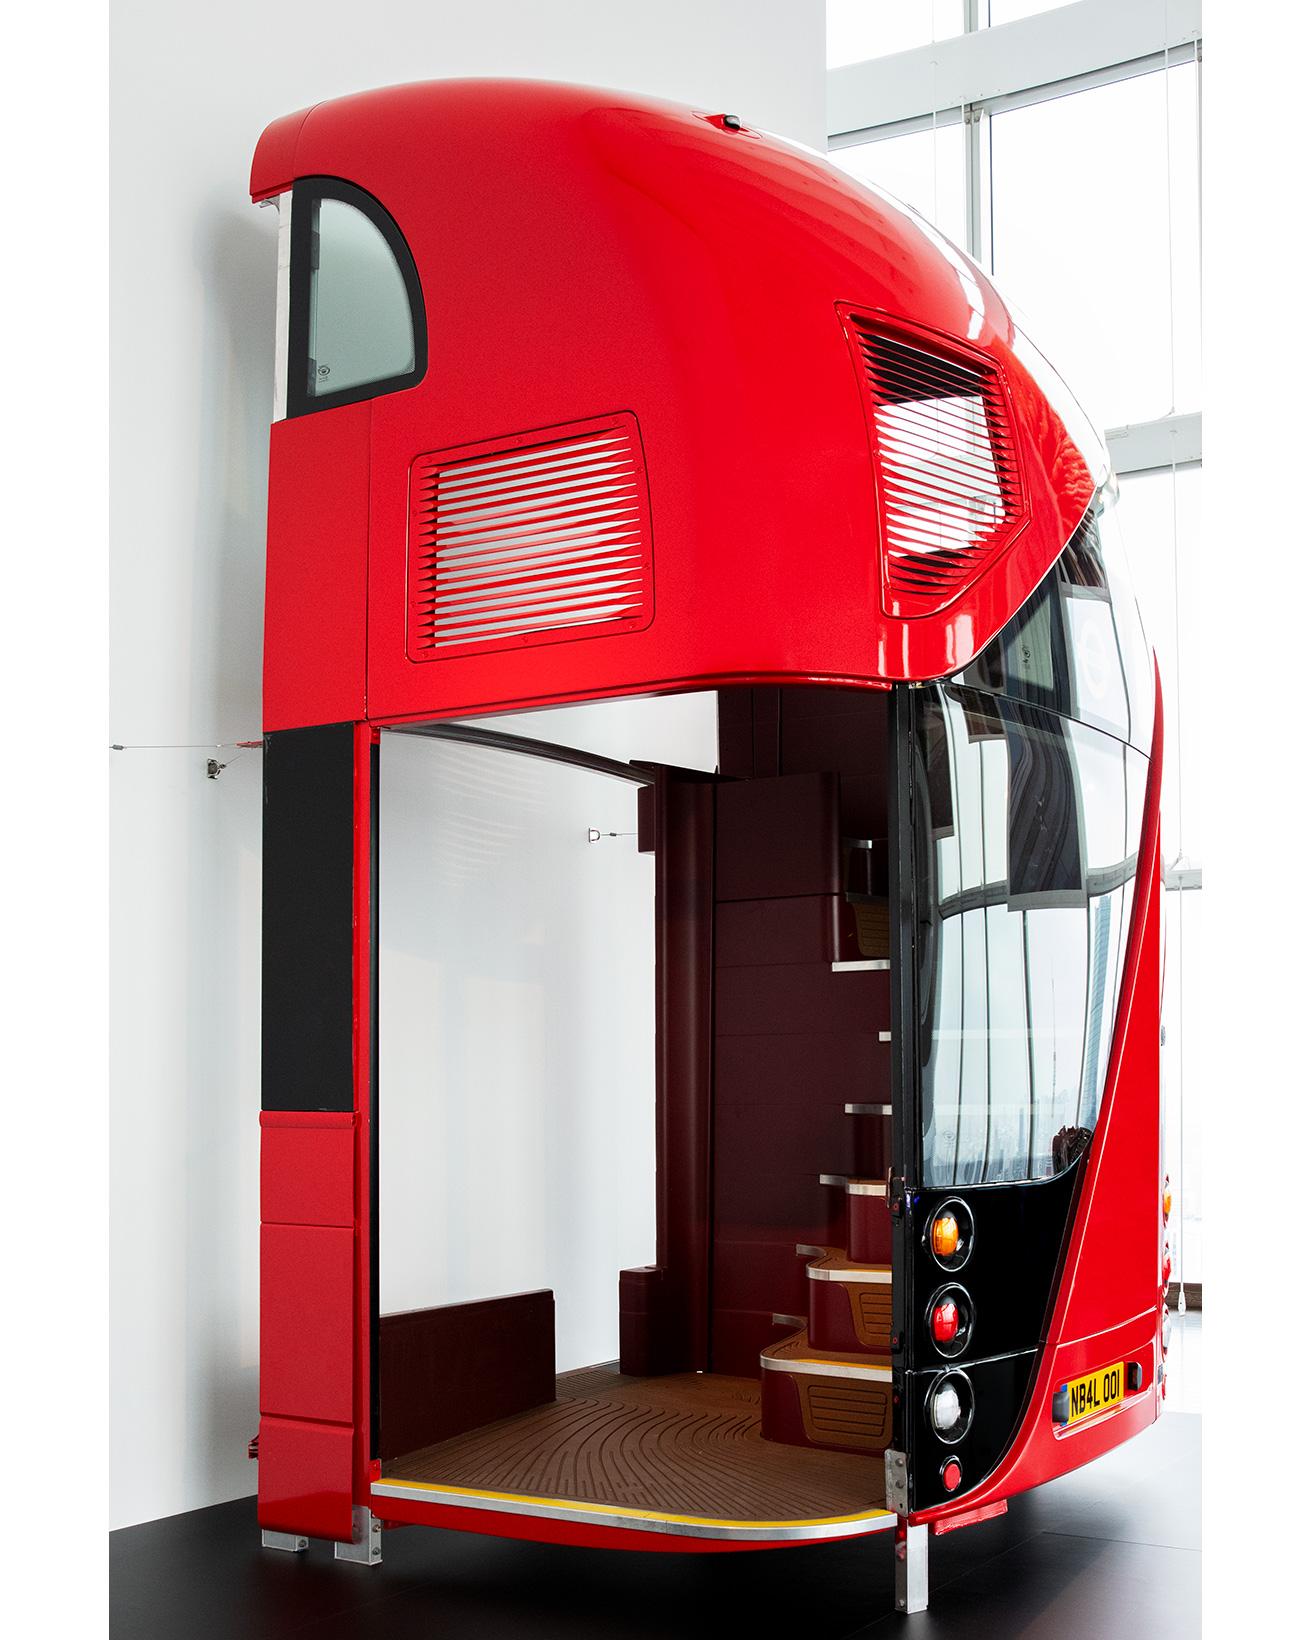 2012年から運用されるロンドンの象徴ともいうべきダブルデッカーバスの新型車両をデザイン。乗降の利便性を高め、環境性能も大幅に向上させた。